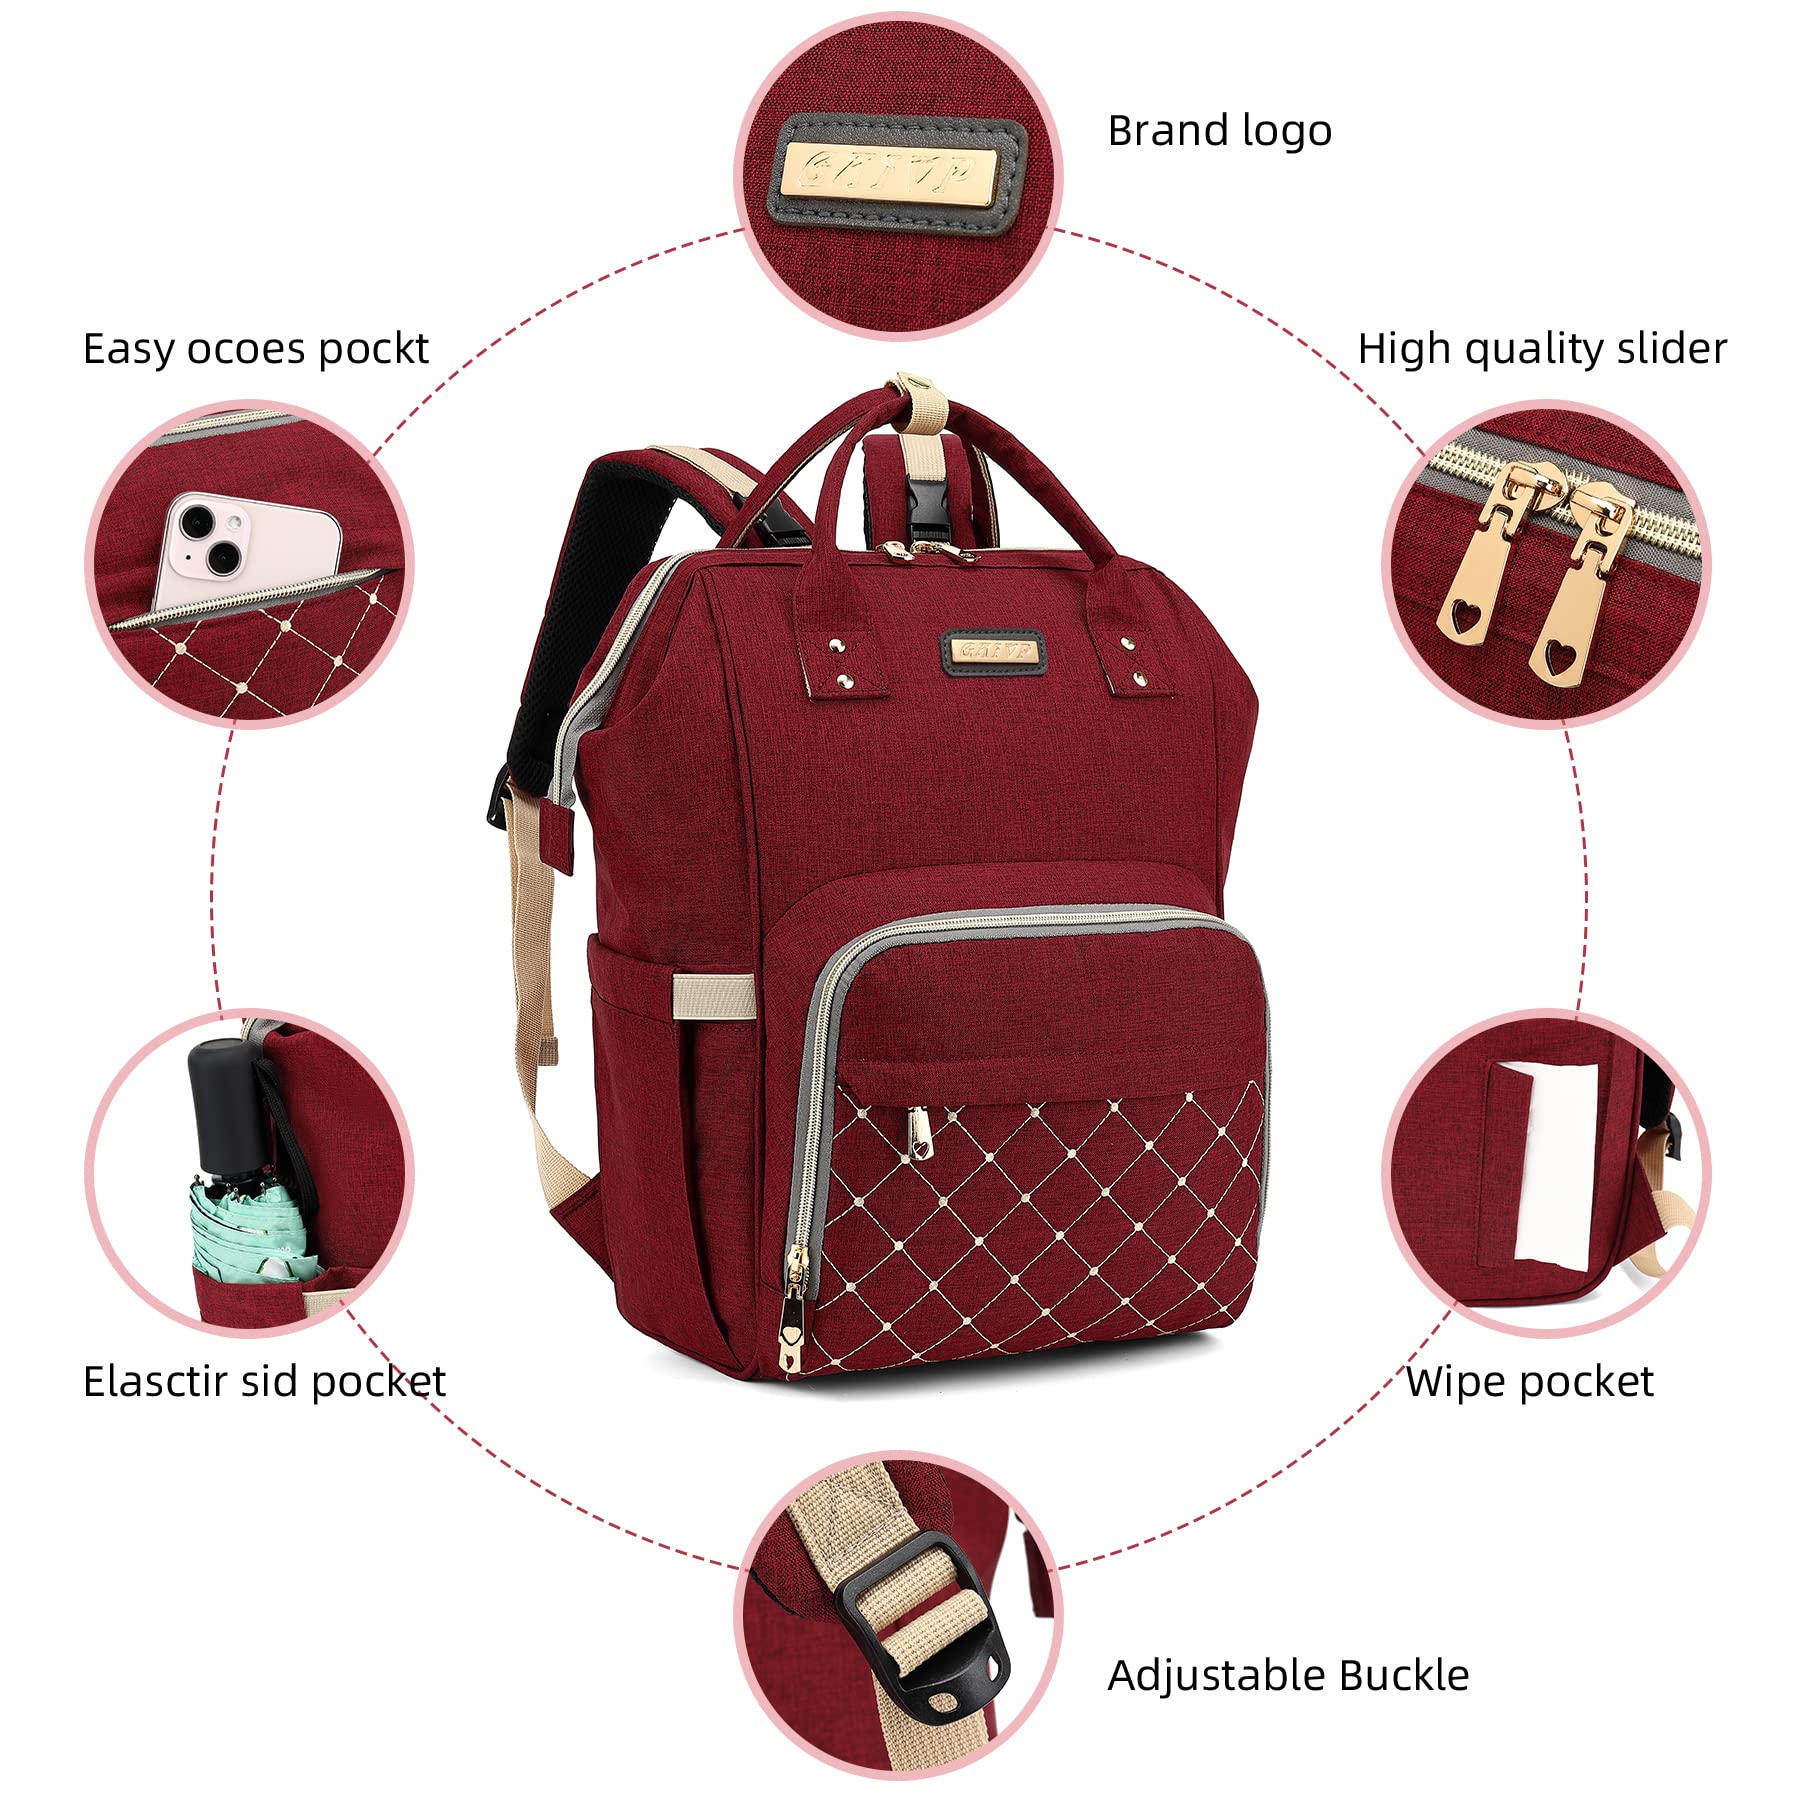 GAIVP Diaper Bag Backpack,Baby Bags for Mom and Dad Maternity Diaper Bag